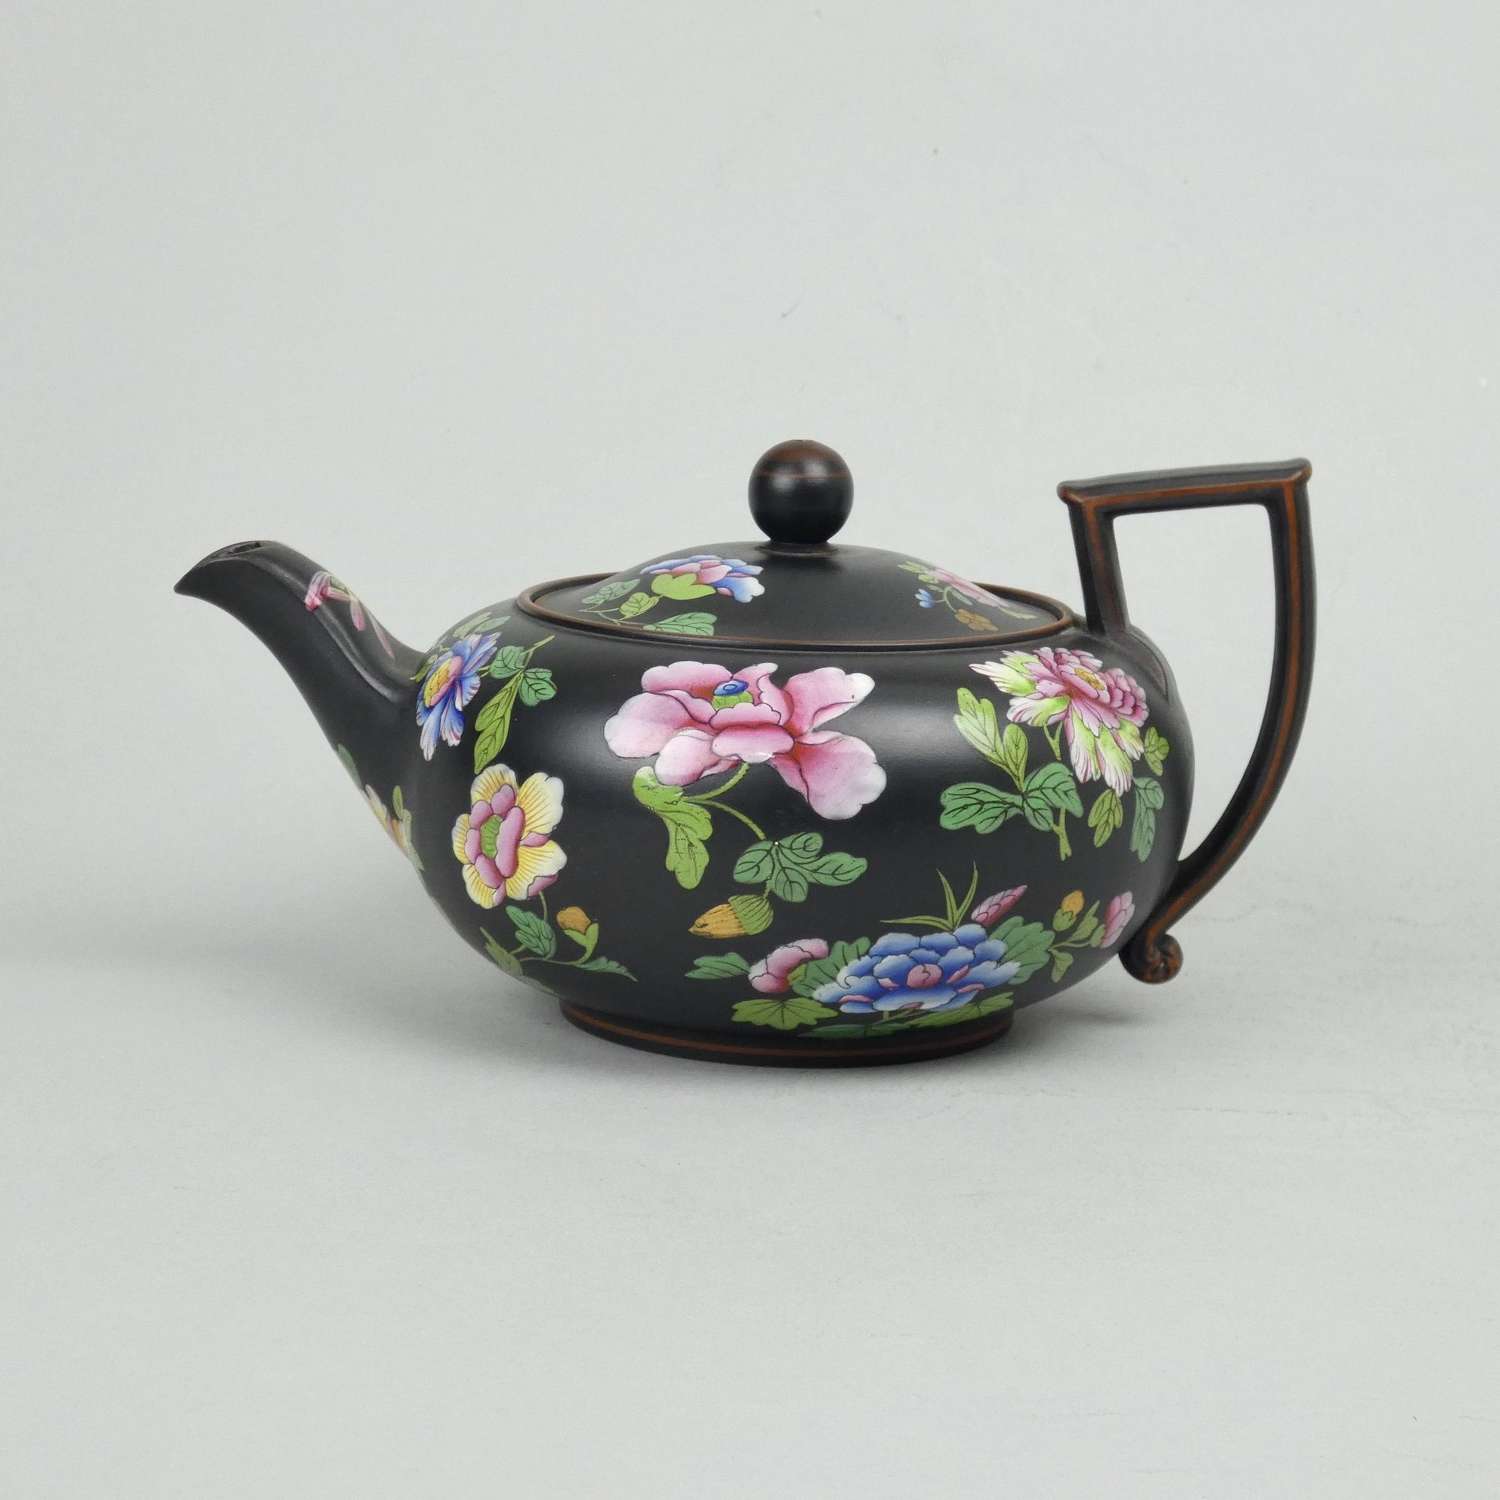 Wedgwood Capriware teapot